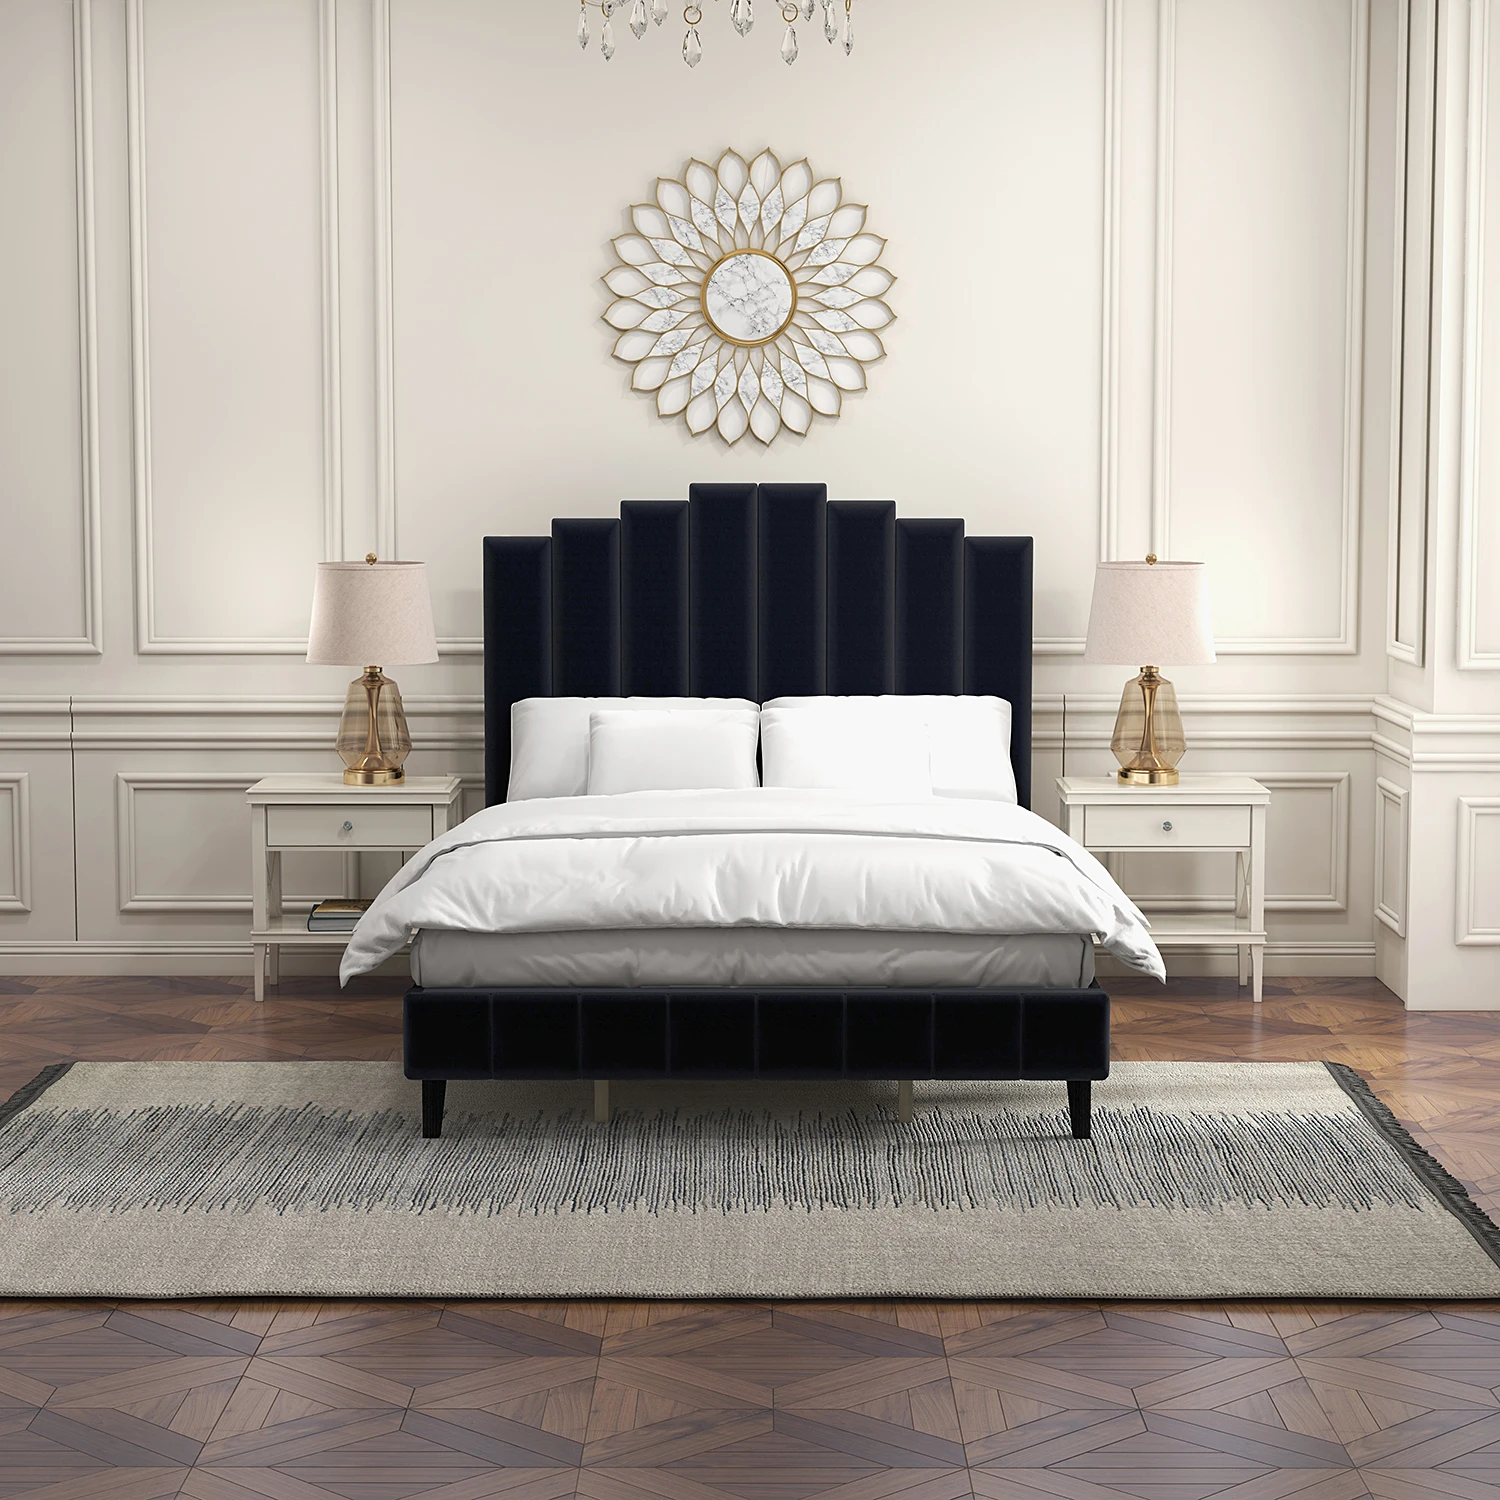 Кровать-платформа с мягкой обивкой Pharsalia с изголовьем и изножьем размера King / Queen Size